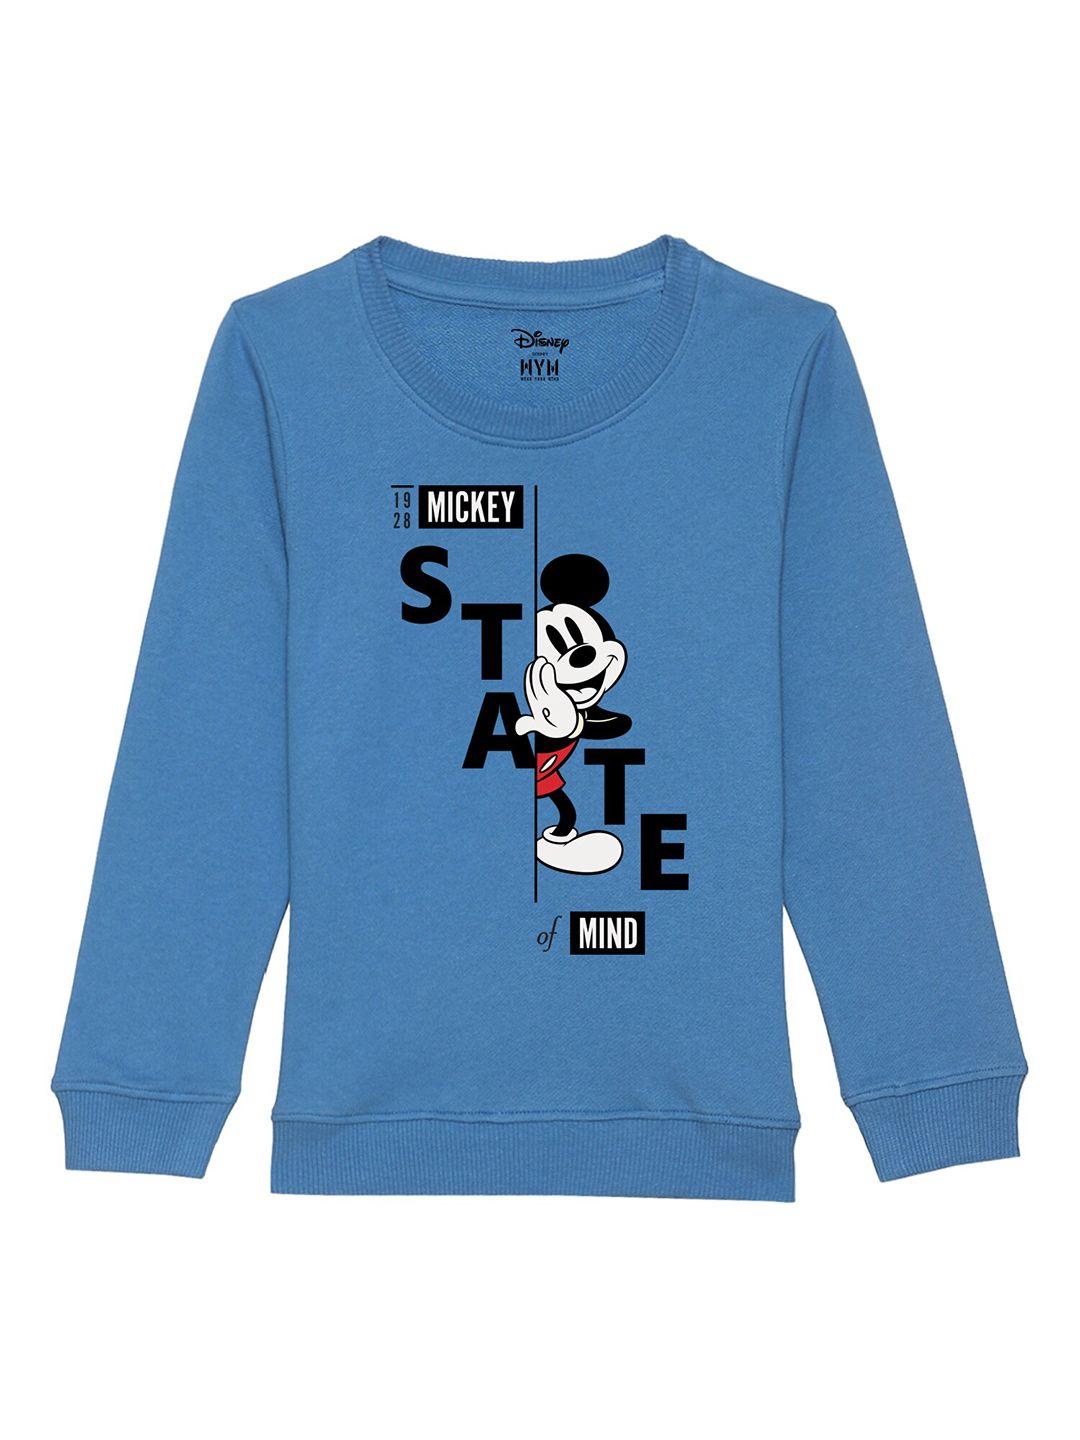 disney-by-wear-your-mind-boys-blue-printed-sweatshirt